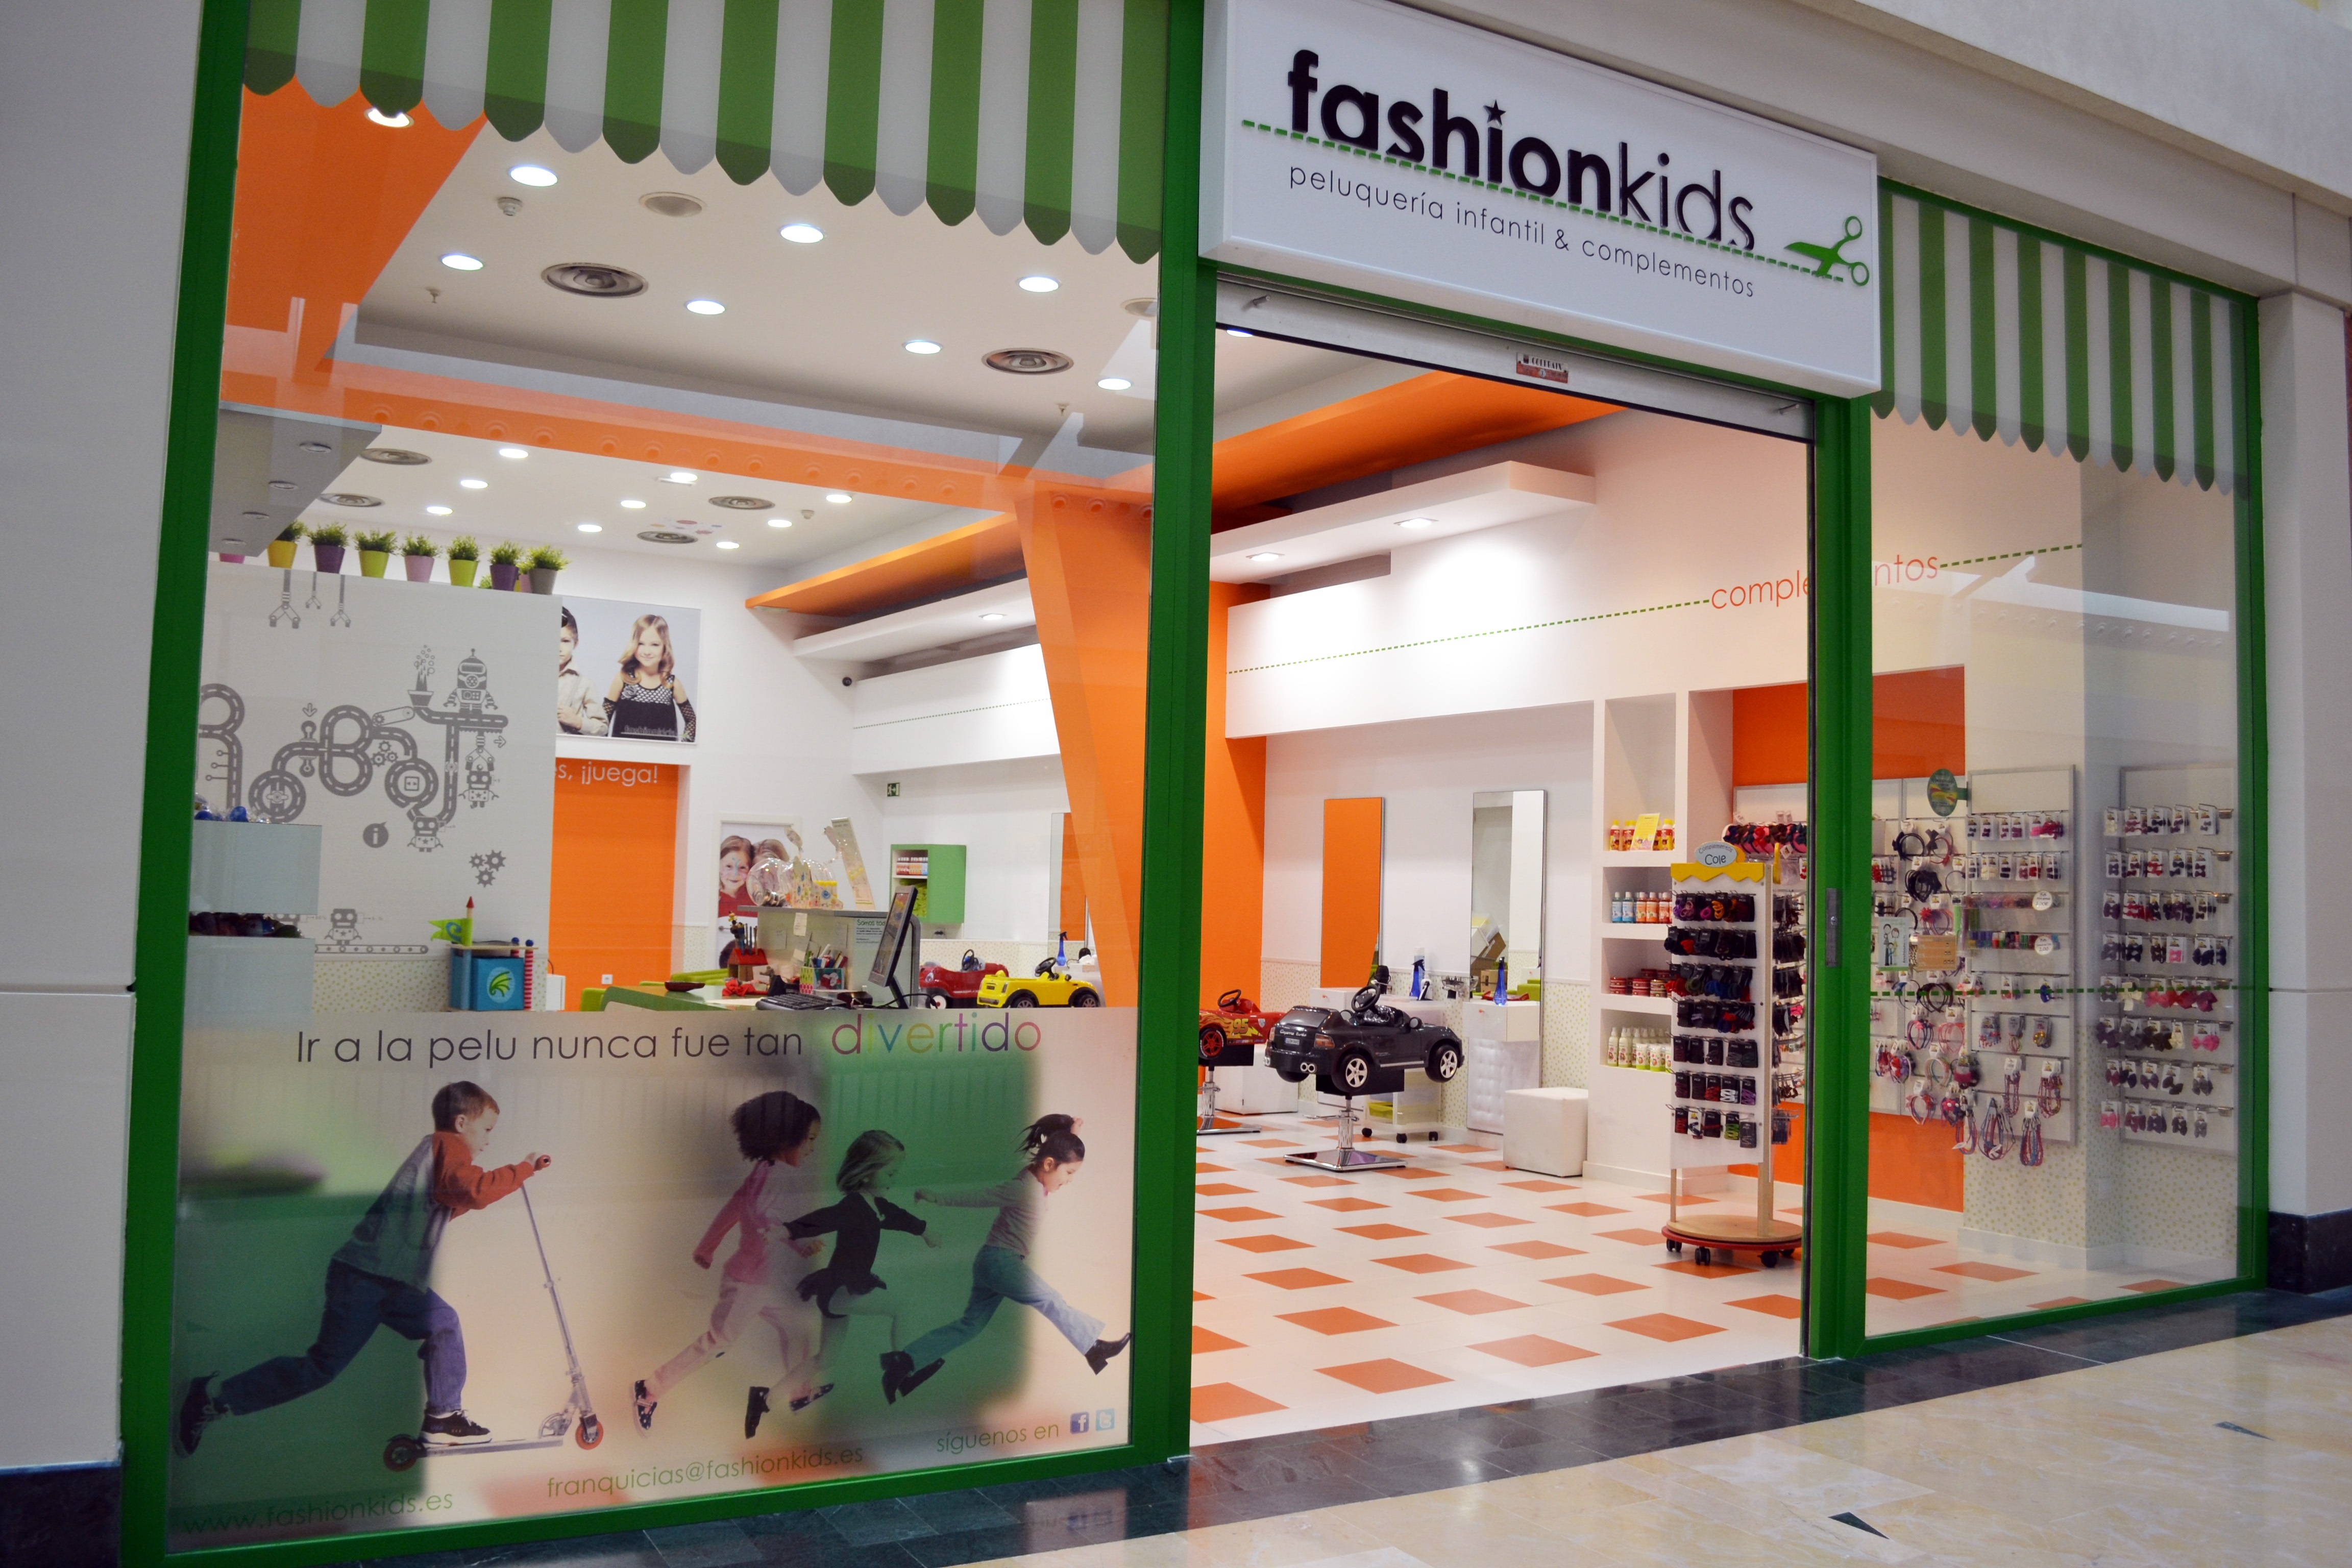 La cadena de peluquerías infantiles Fashionkids prevé abrir en Burgos en el primer trimestre de 2014